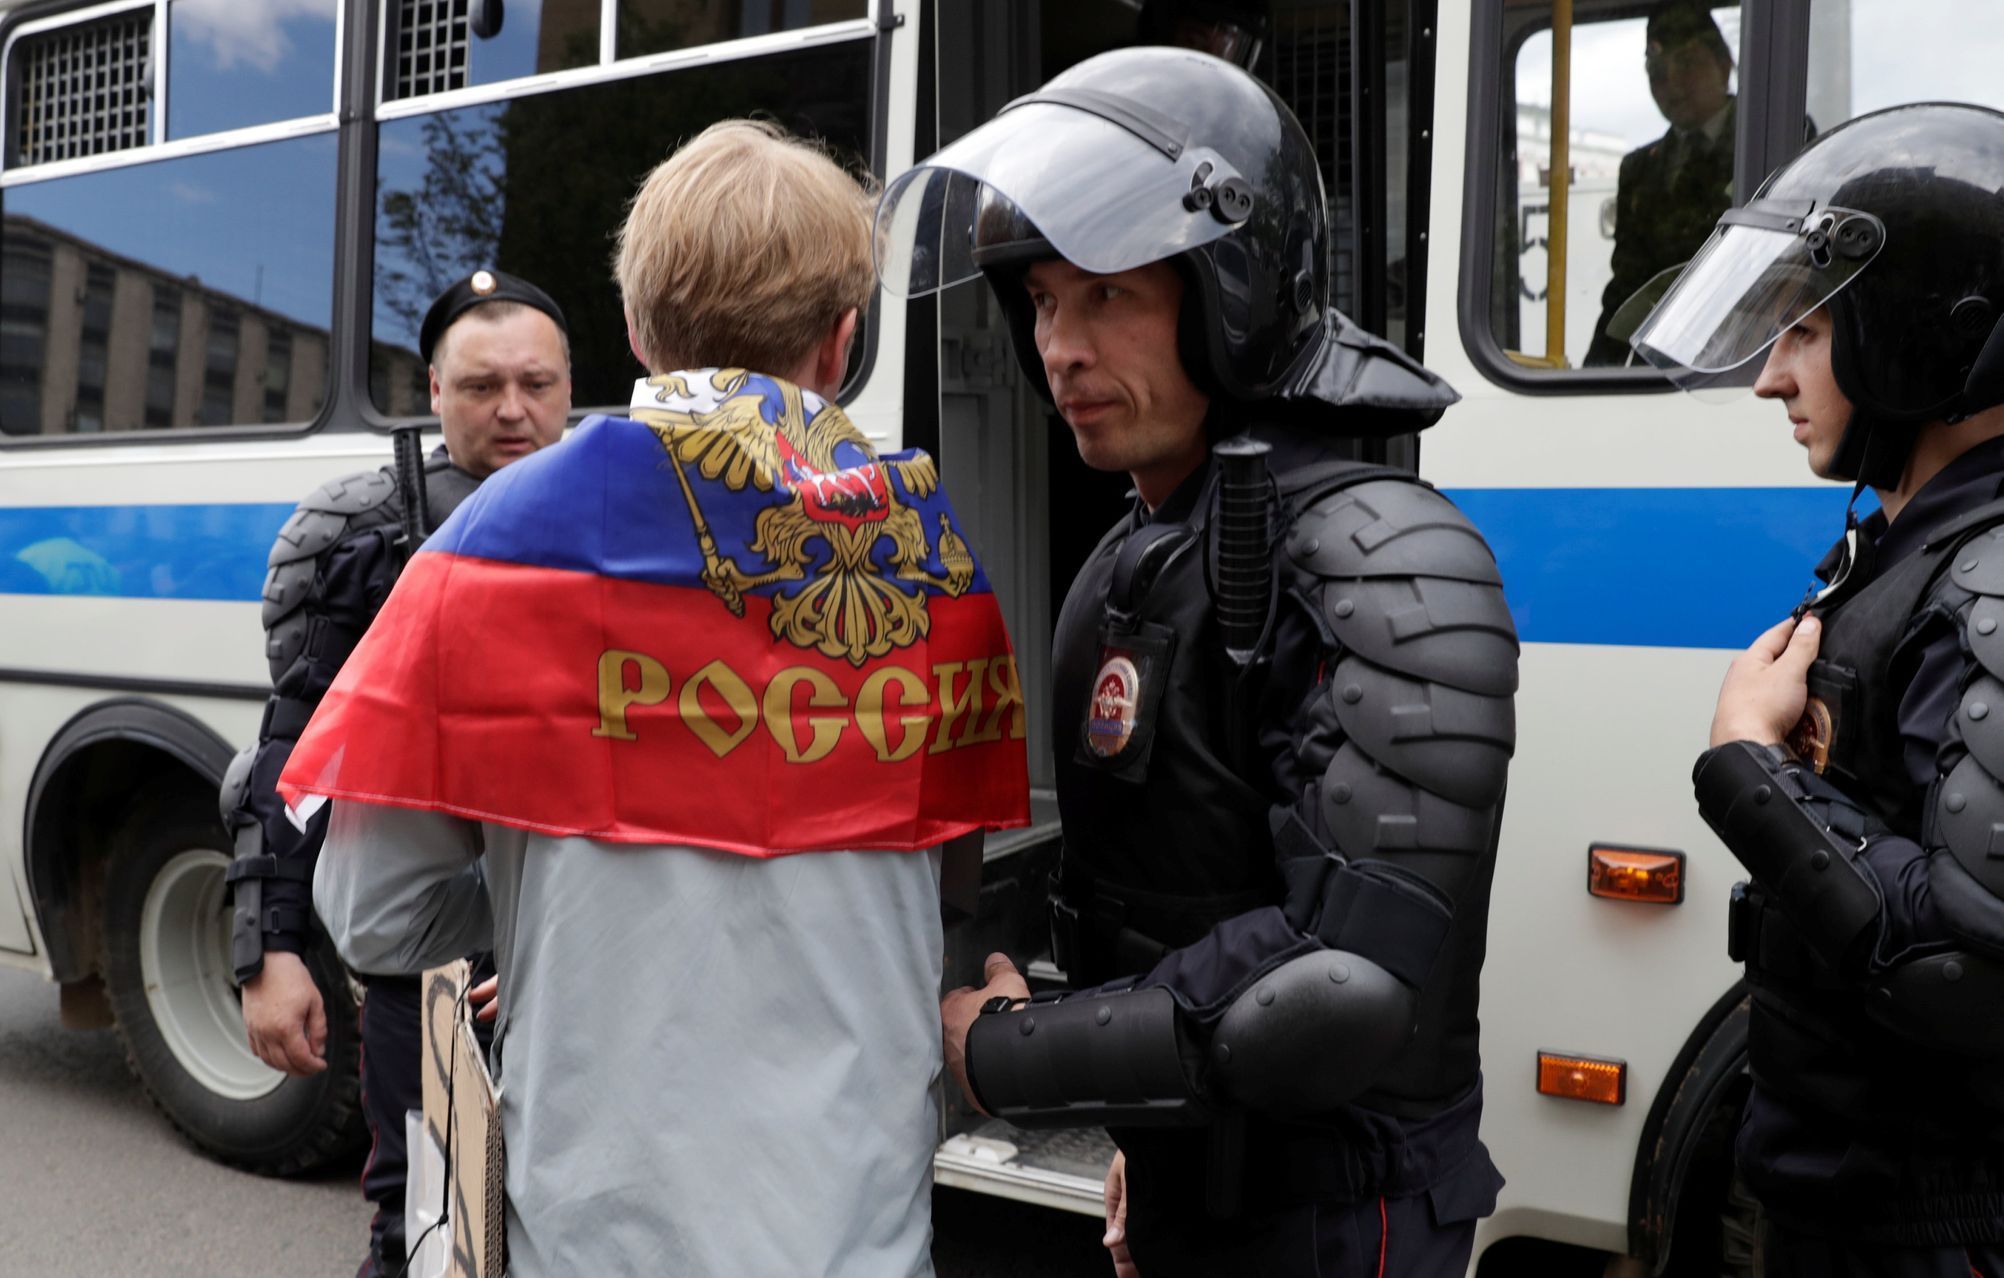 Moskva, policie zatýká účastníky protikorupční demonstrace svolané Alexejem Navalným